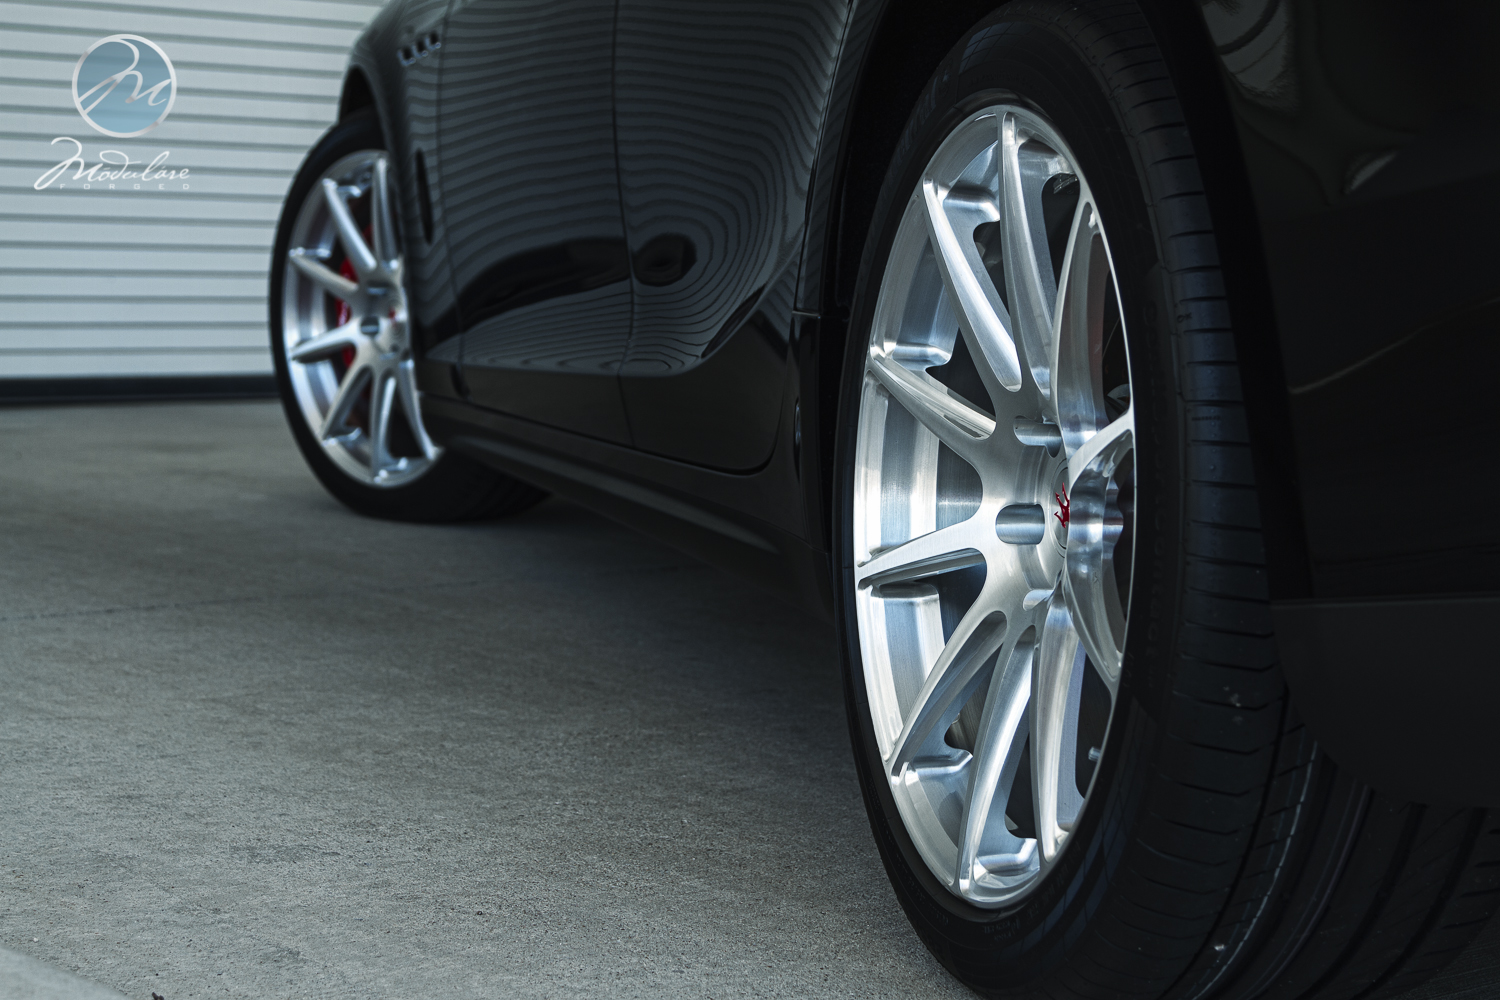 Modulare Wheels + Boardwalk Ferrari Maserati | 2014 ...